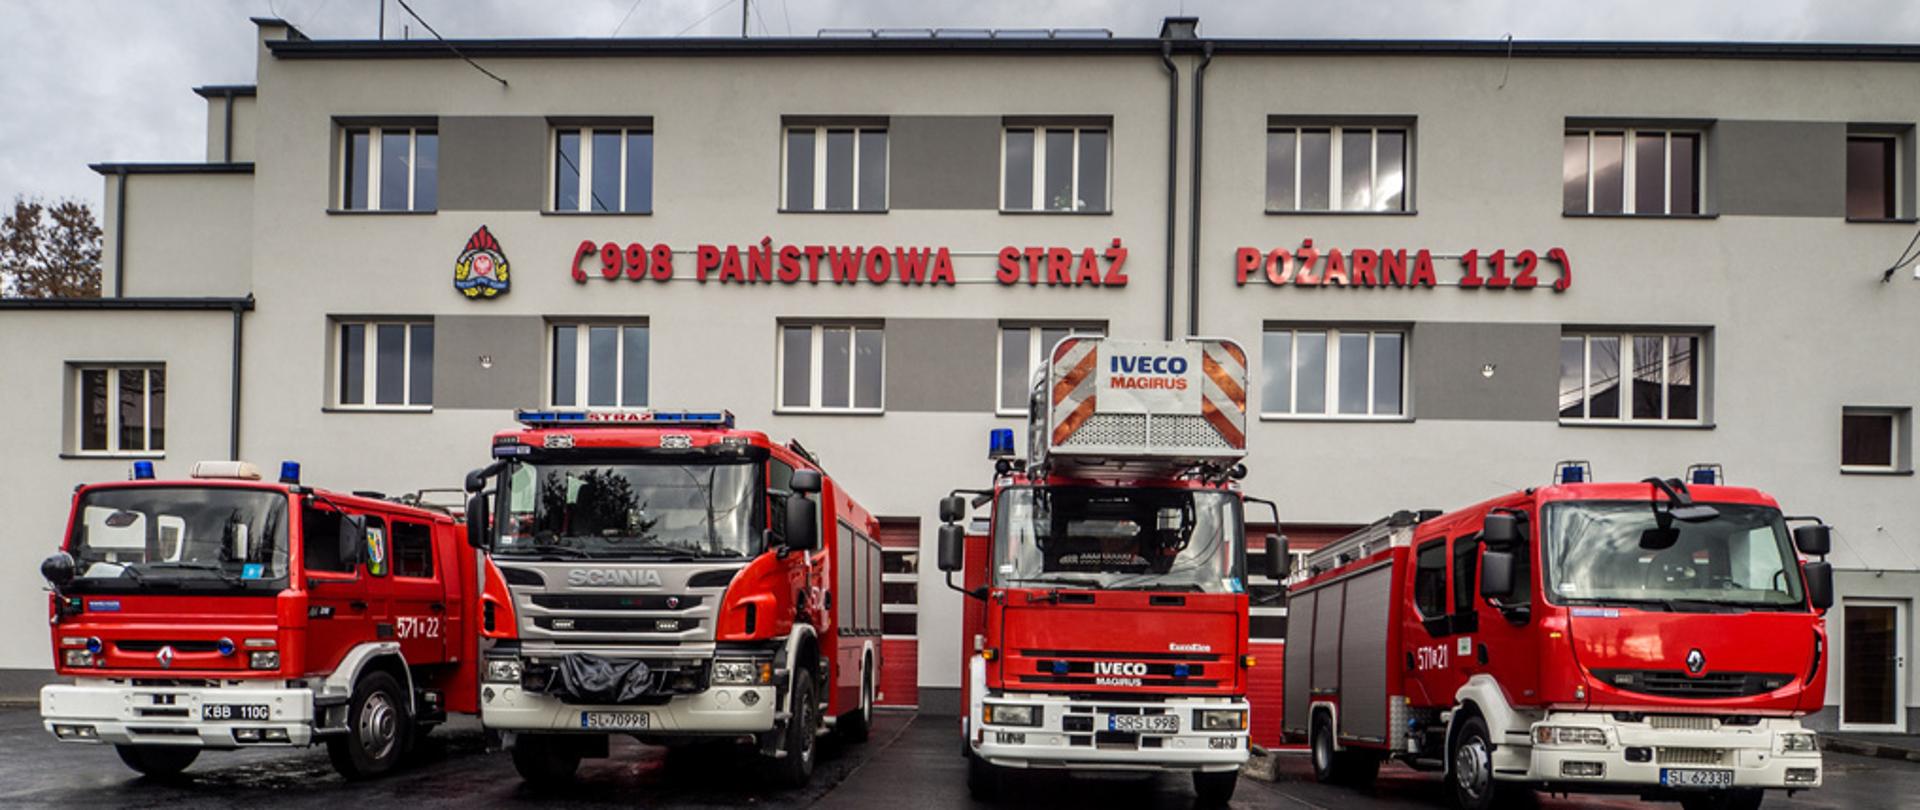 Zdjęcie frontu budynku Komendy Miejskie Państwowej Straży Pożarnej w Rudzie Śląskiej wraz z stojącymi przed nią samochodami pożarniczymi.